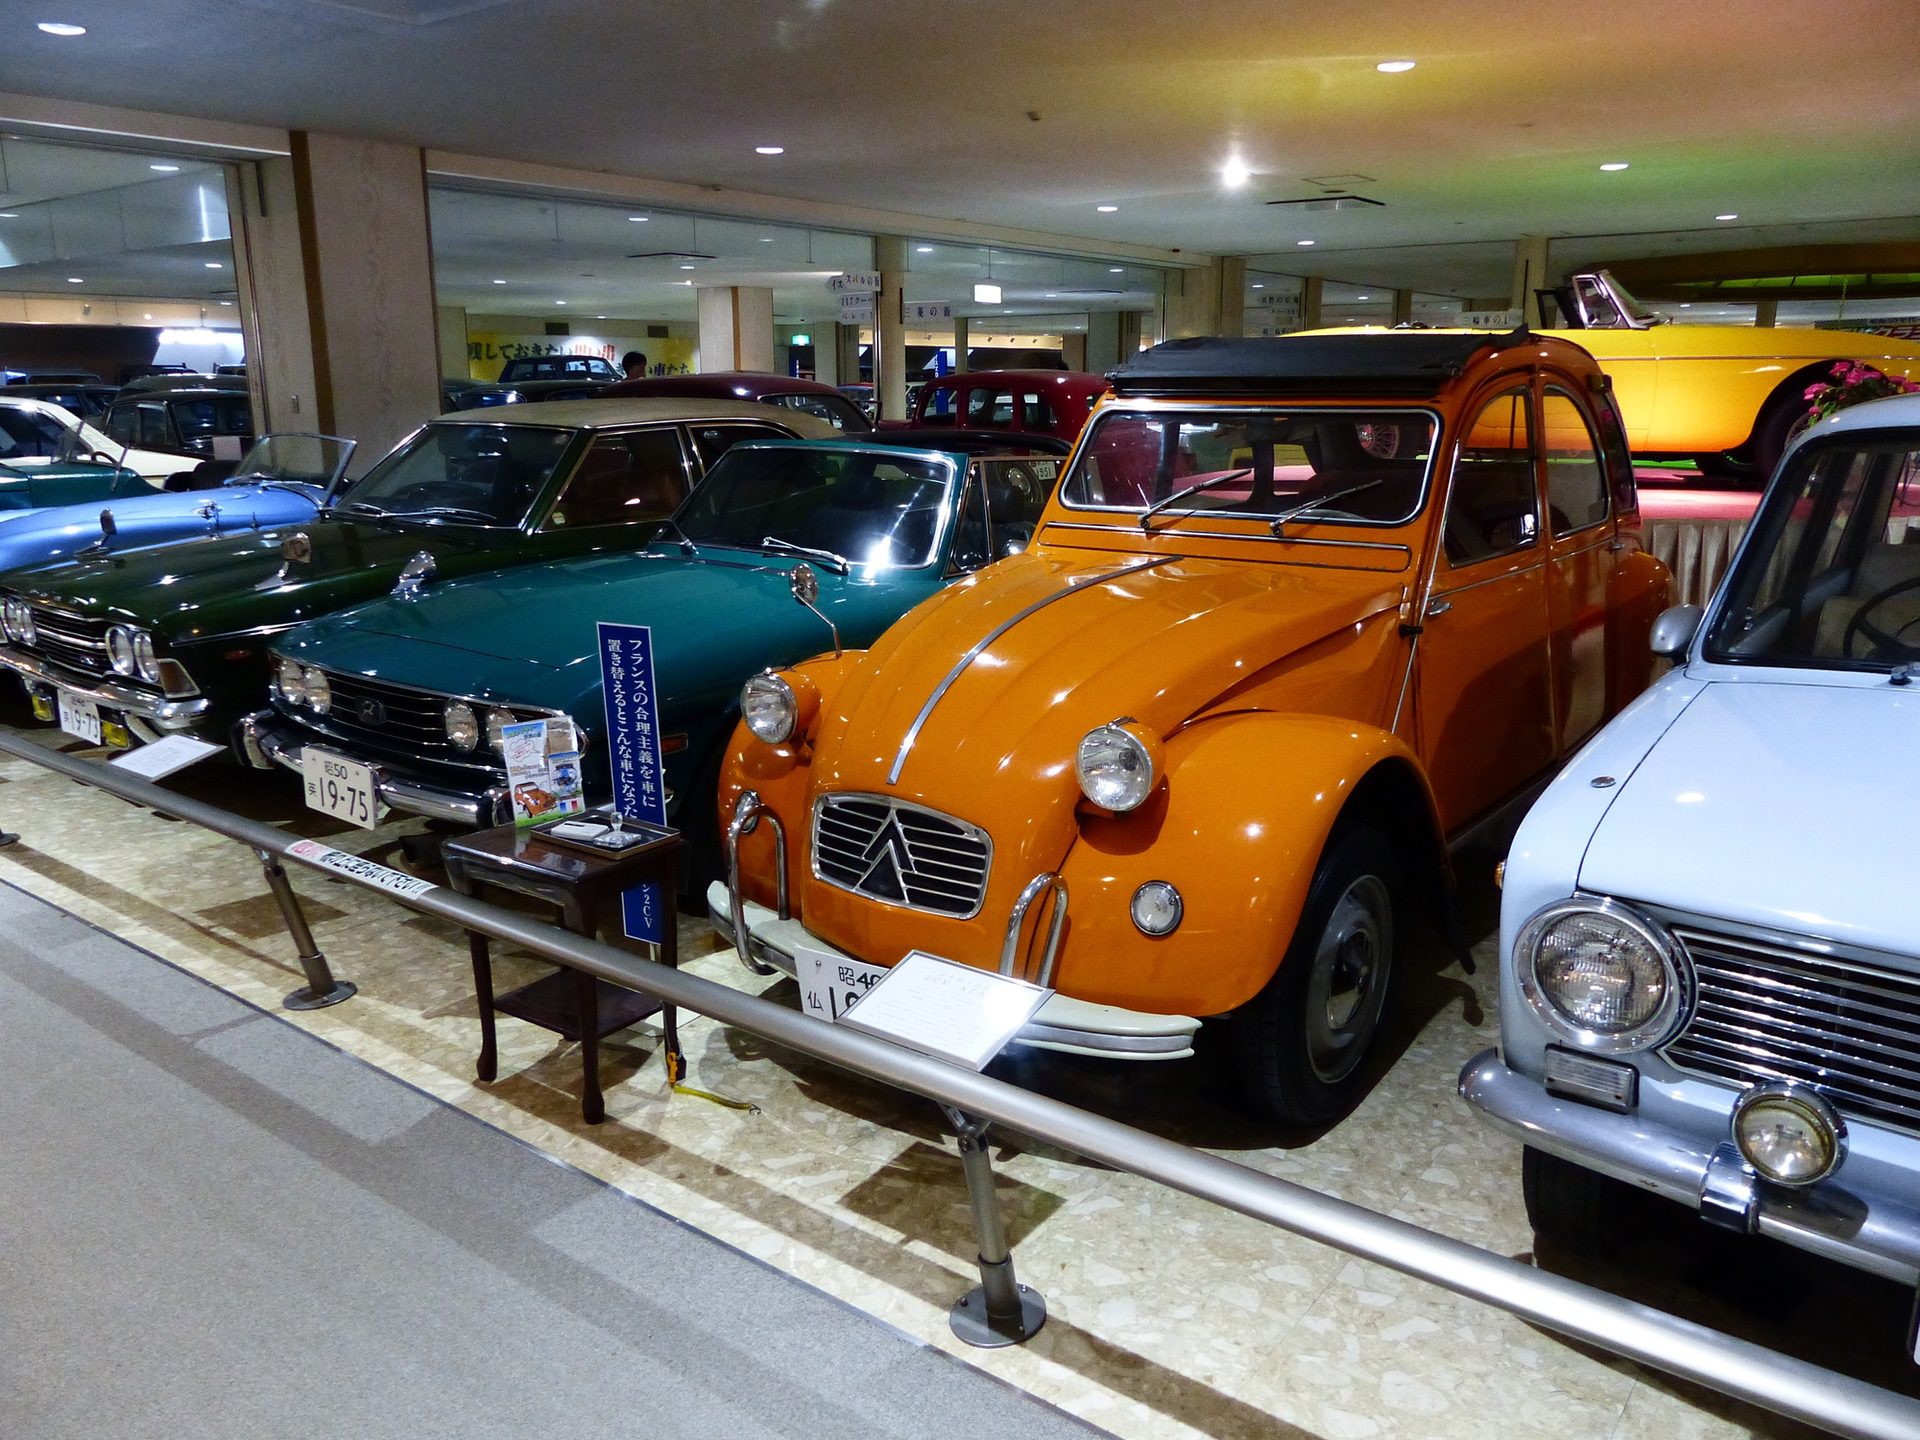 Rising Sun Car Museums - Matt Stone Cars